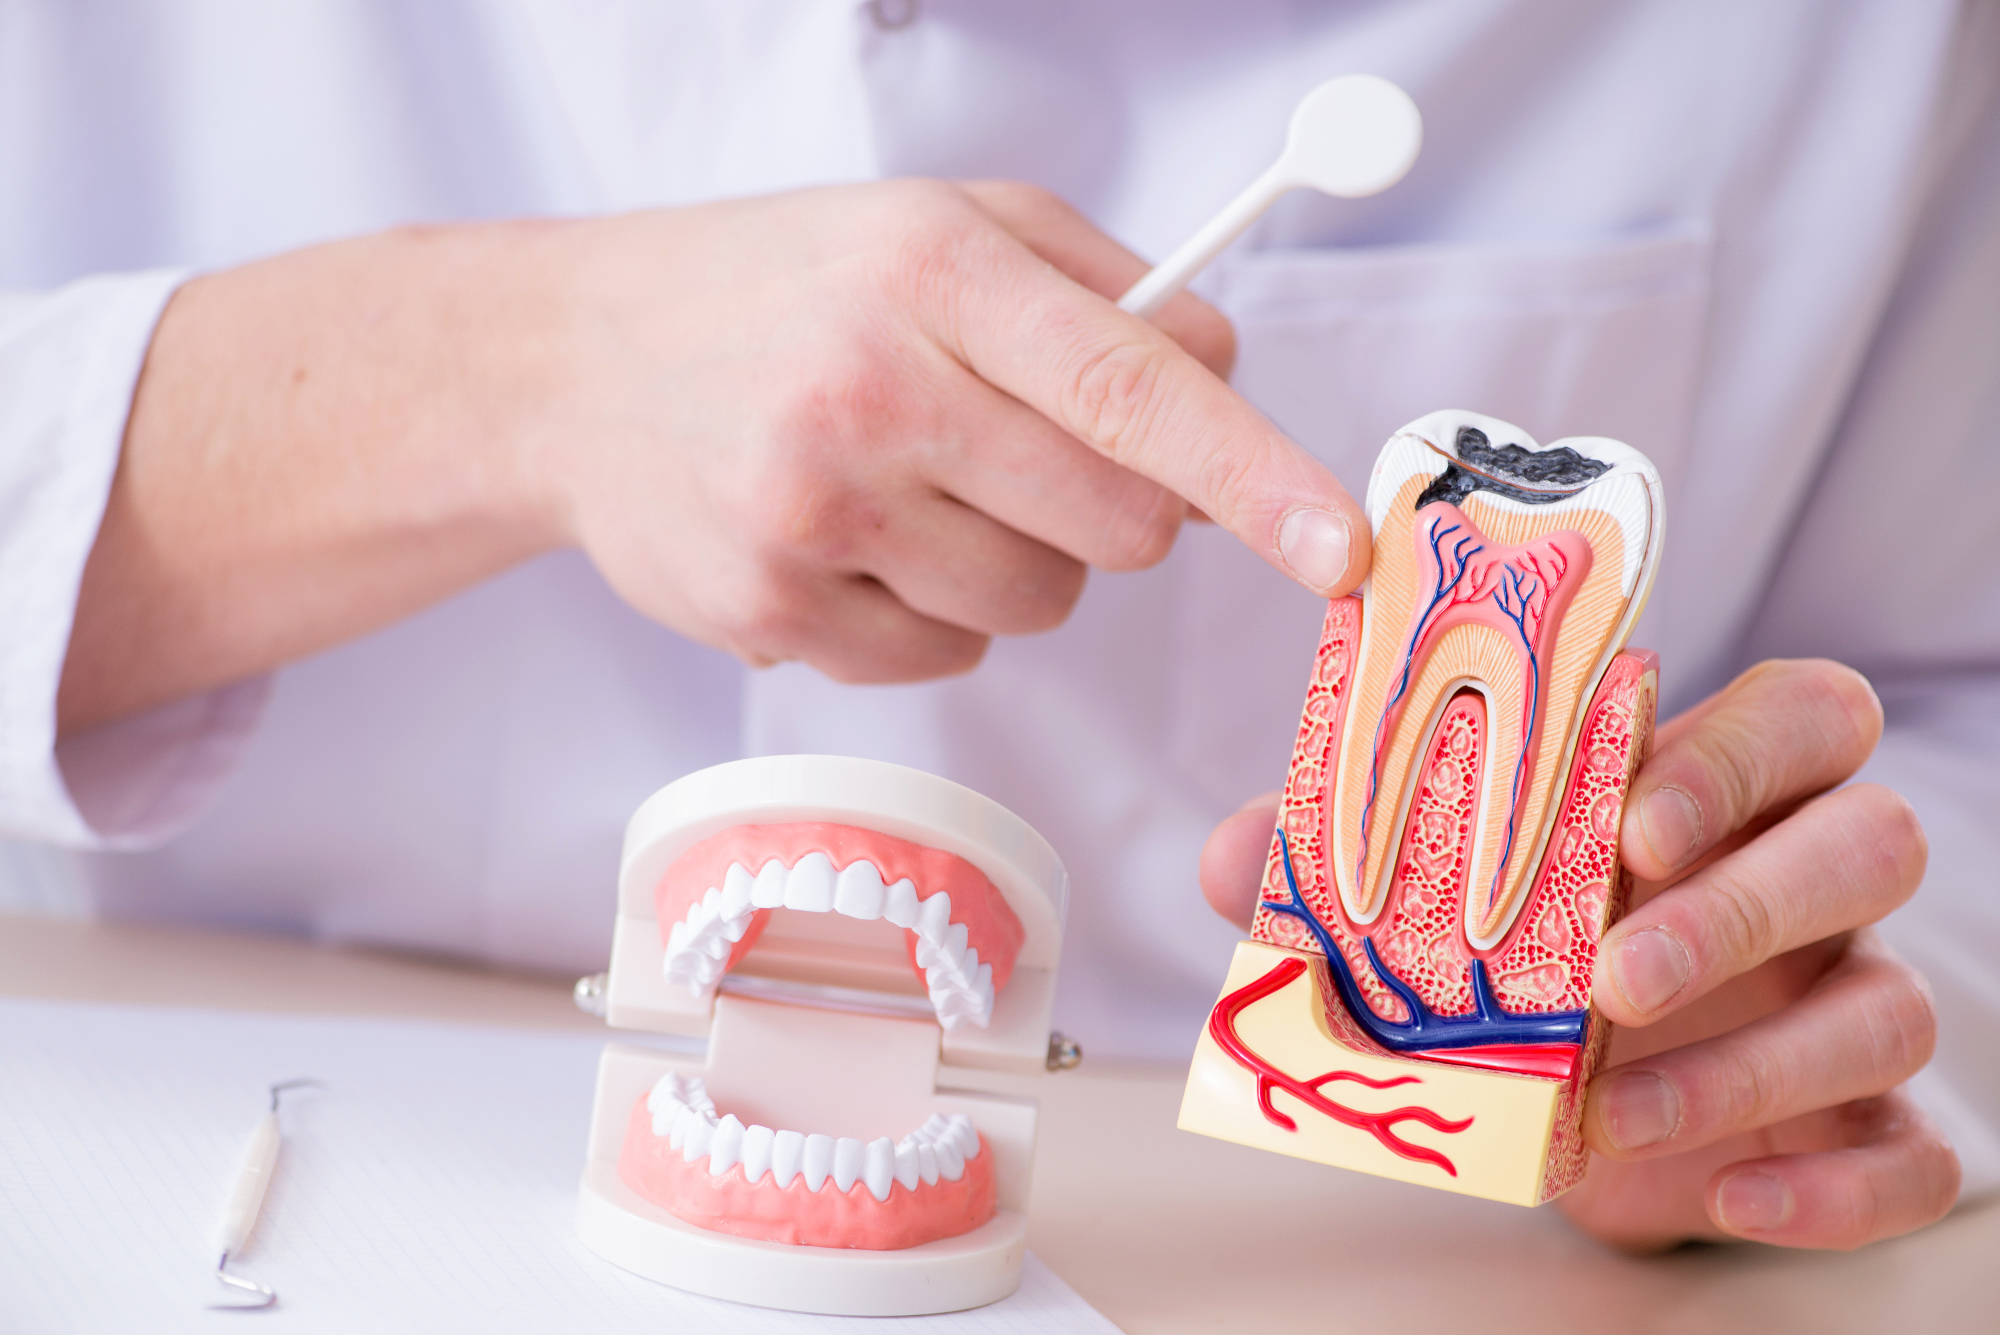 Ortodont vam lahko pomaga do najlepšega nasmeha ter lepo oblikovanih zob